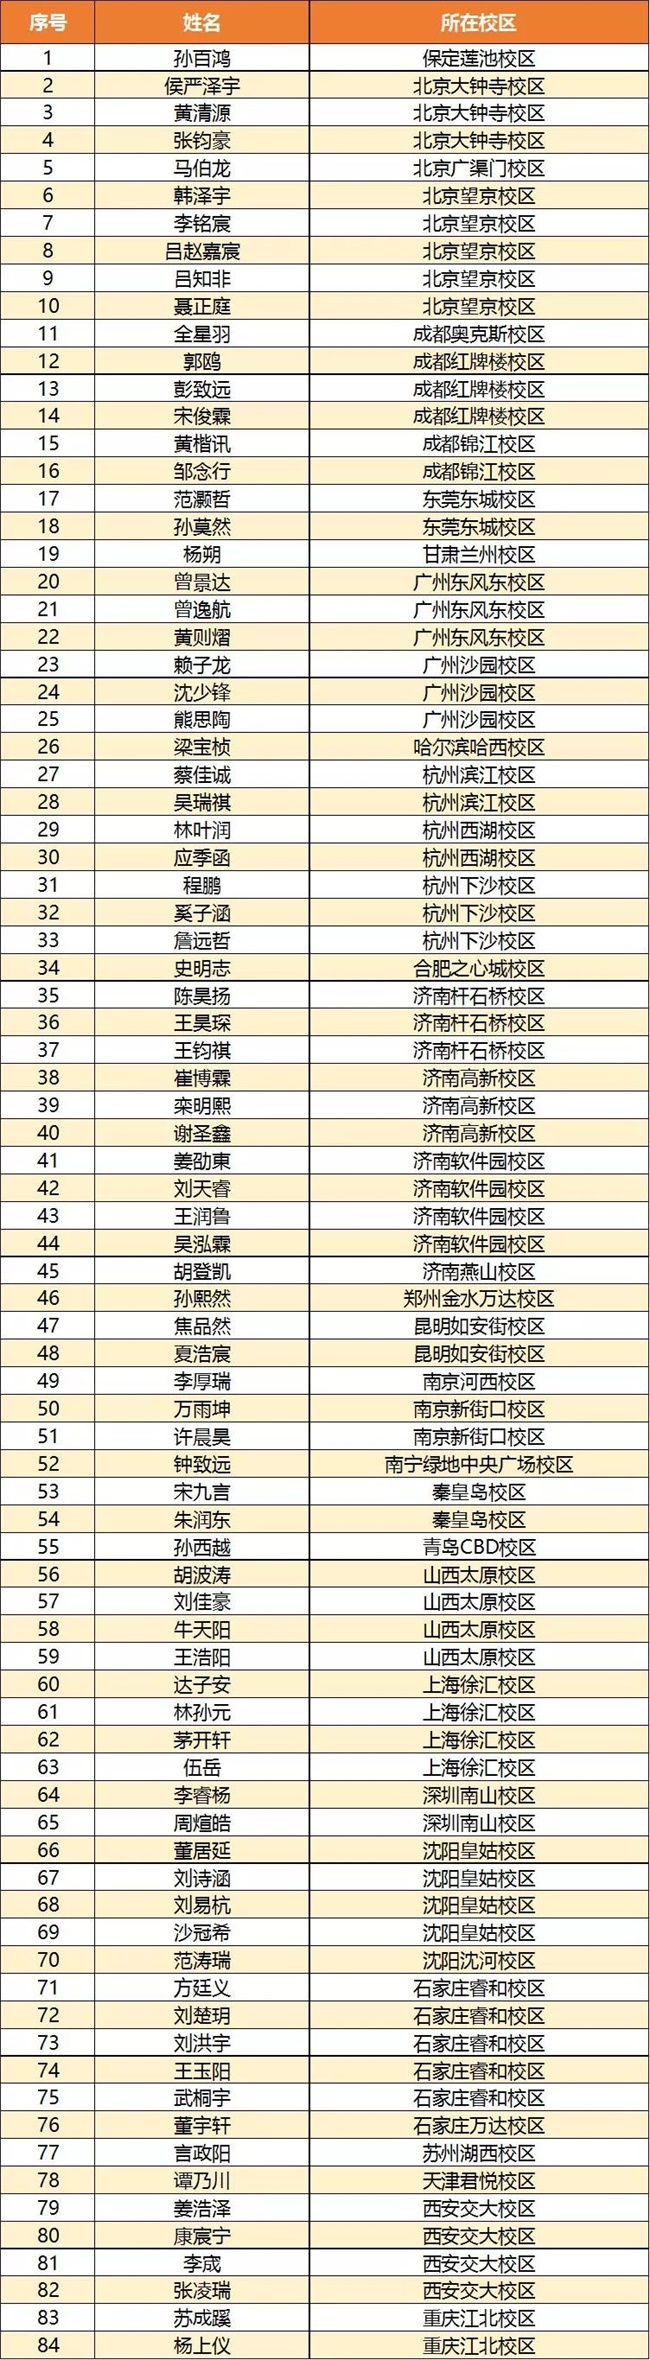 【荣誉榜】2018“发现杯”中国青少年编程挑战活动-晋级名单揭晓！